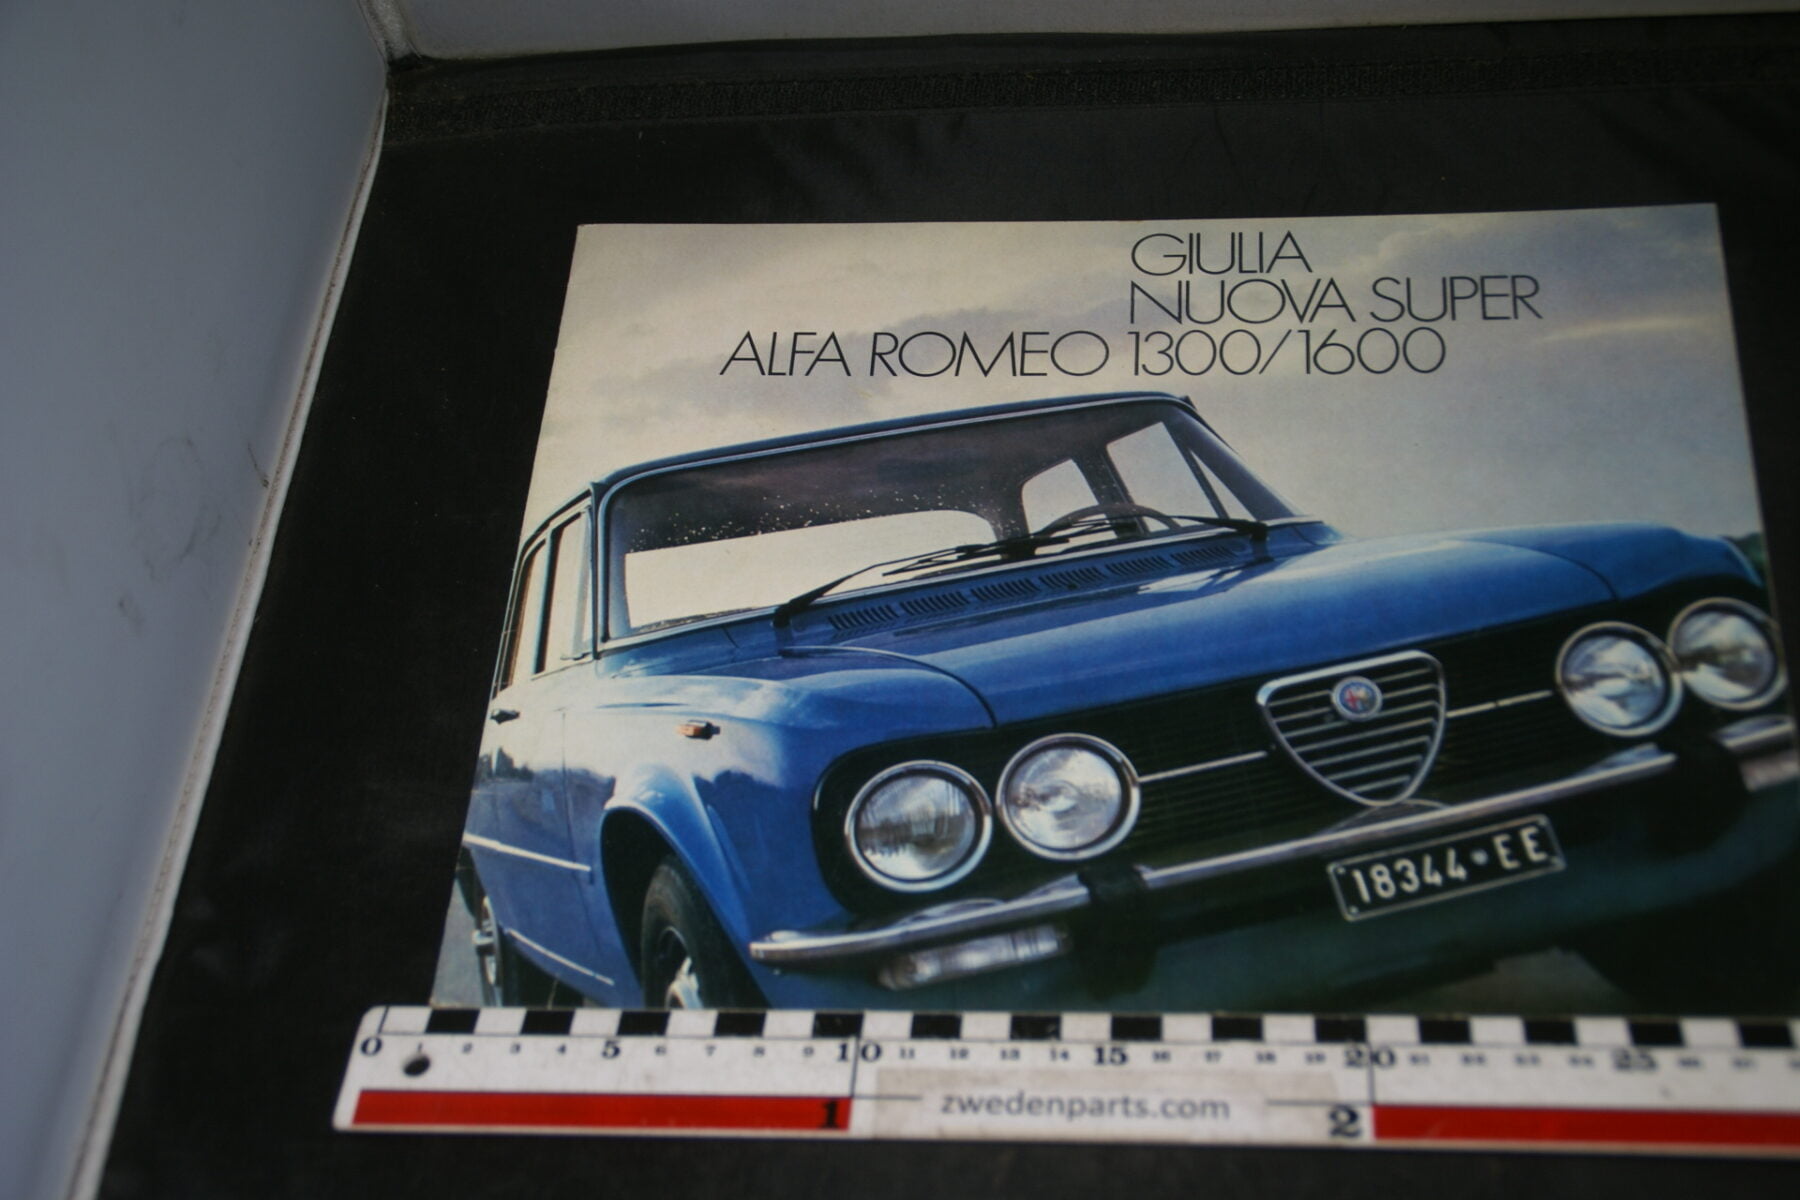 DSC04679 Brochure Alfa Romeo Guilia Nuova Super 1300 - 1600